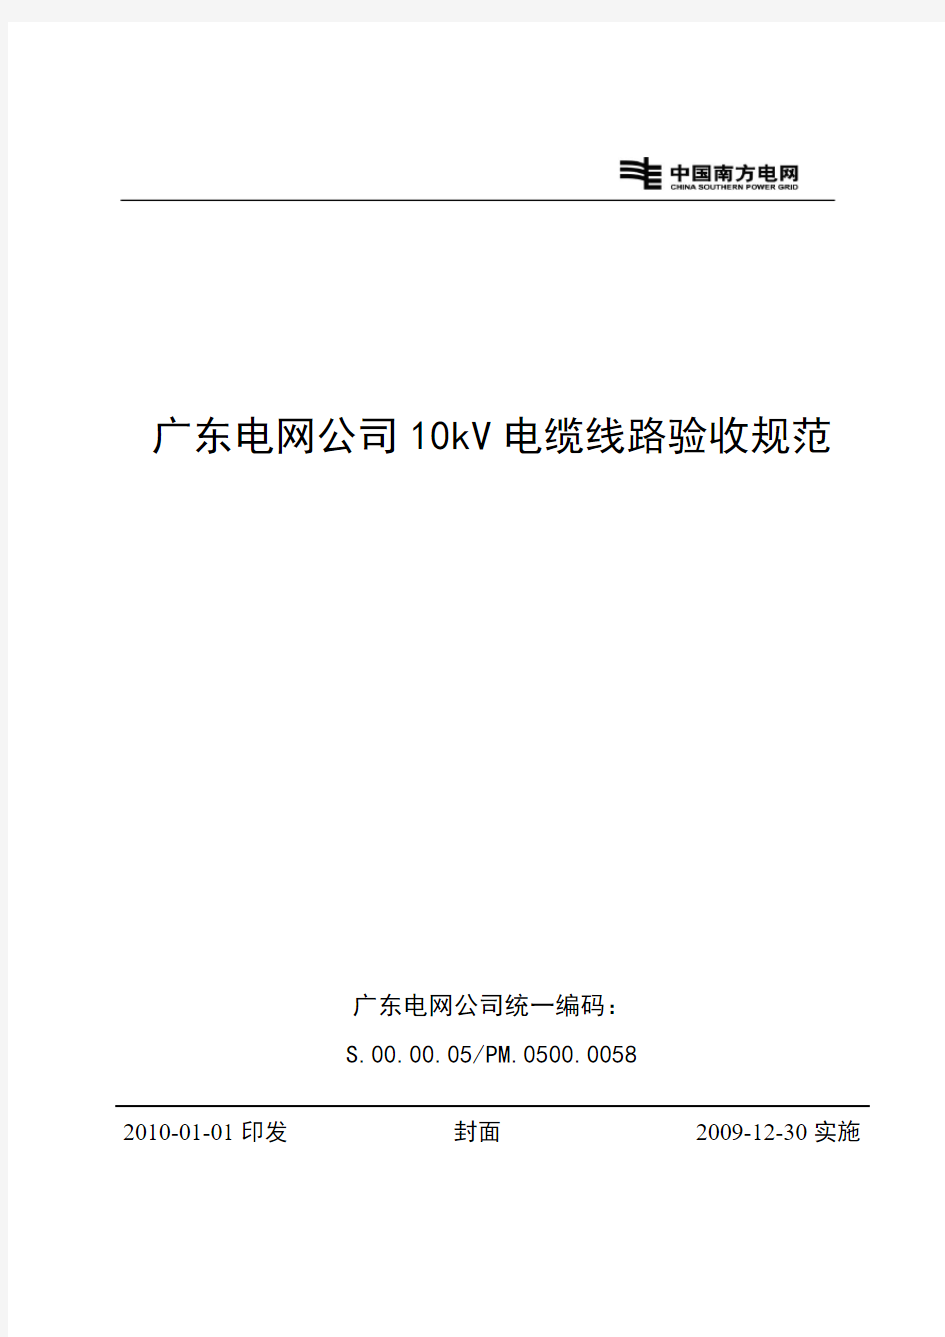 广东电网公司10kV电缆线路验收规范